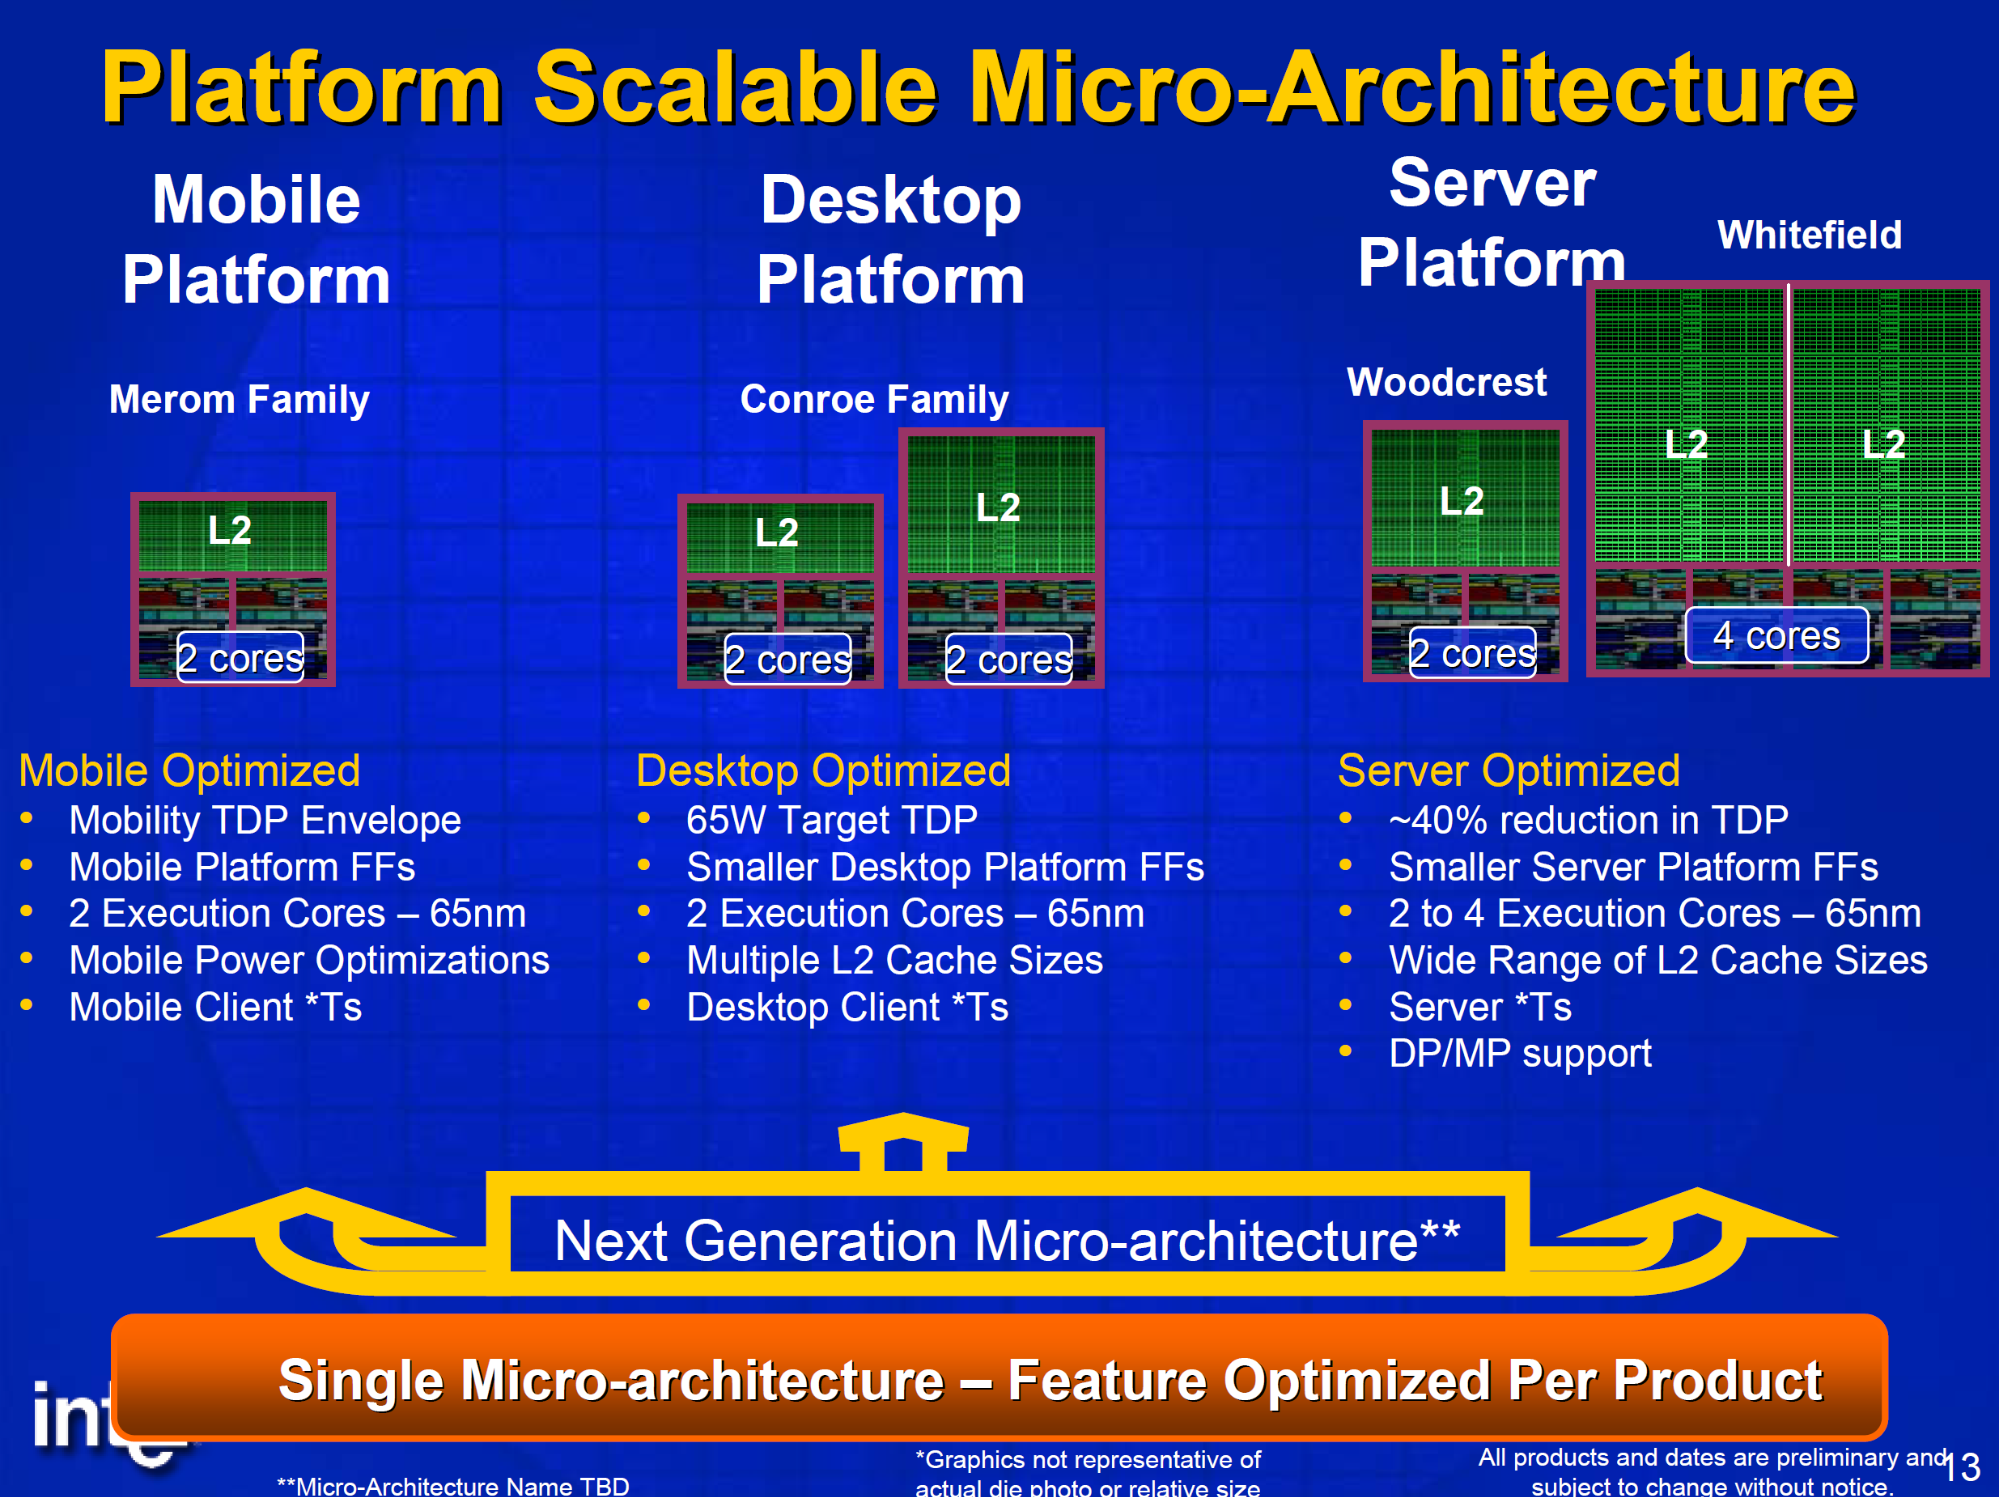 照片中提到了Platform Scalable Micro-Architecture、Mobile、Server，包含了摩爾定律、中央處理器、英特爾、x86、英特爾核心